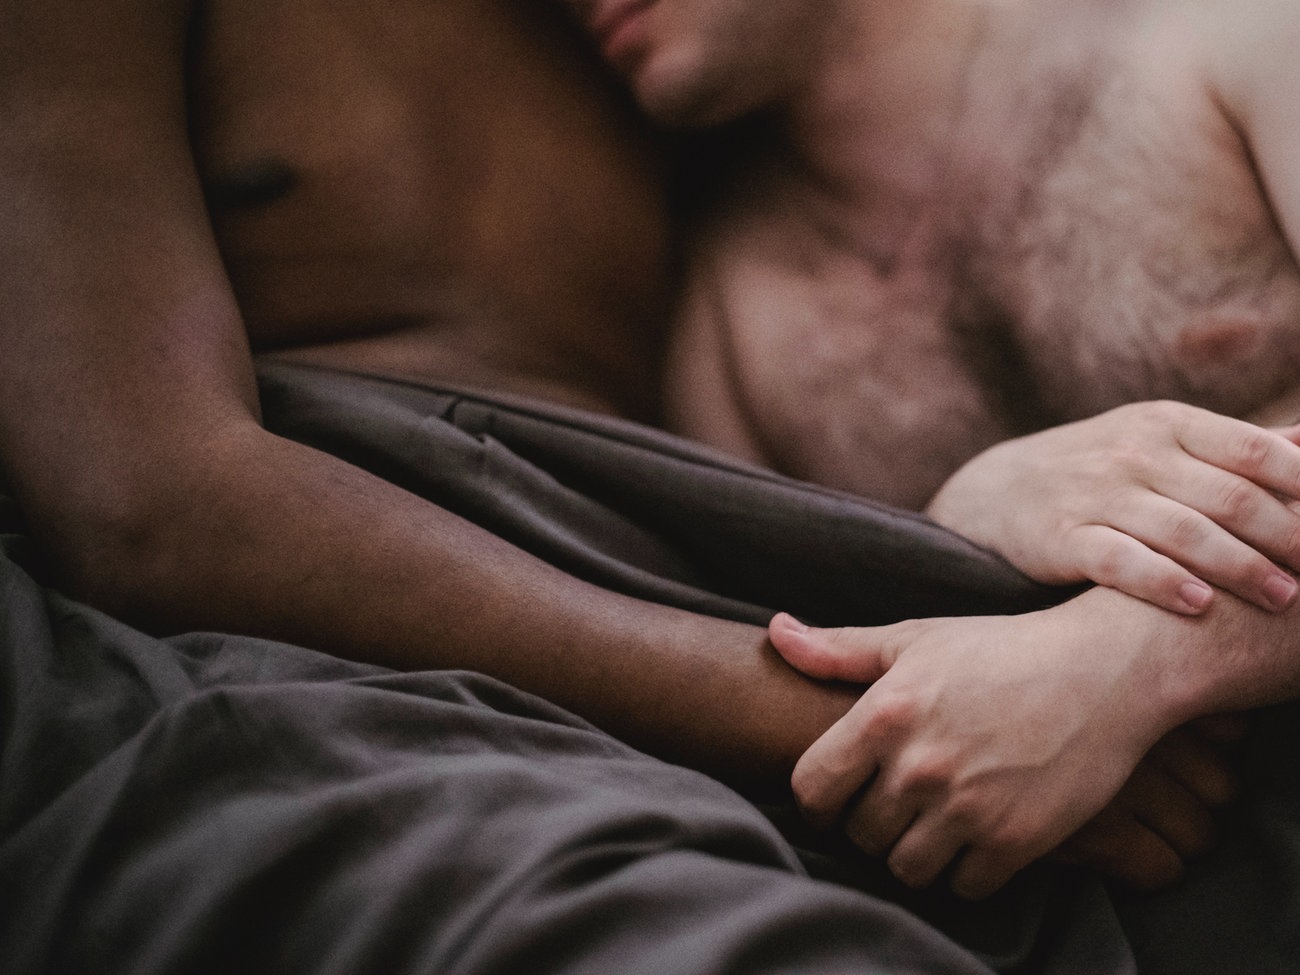 App für Sex-Dates: „Offene Beziehungen sind keine Seltenheit“ - WELT